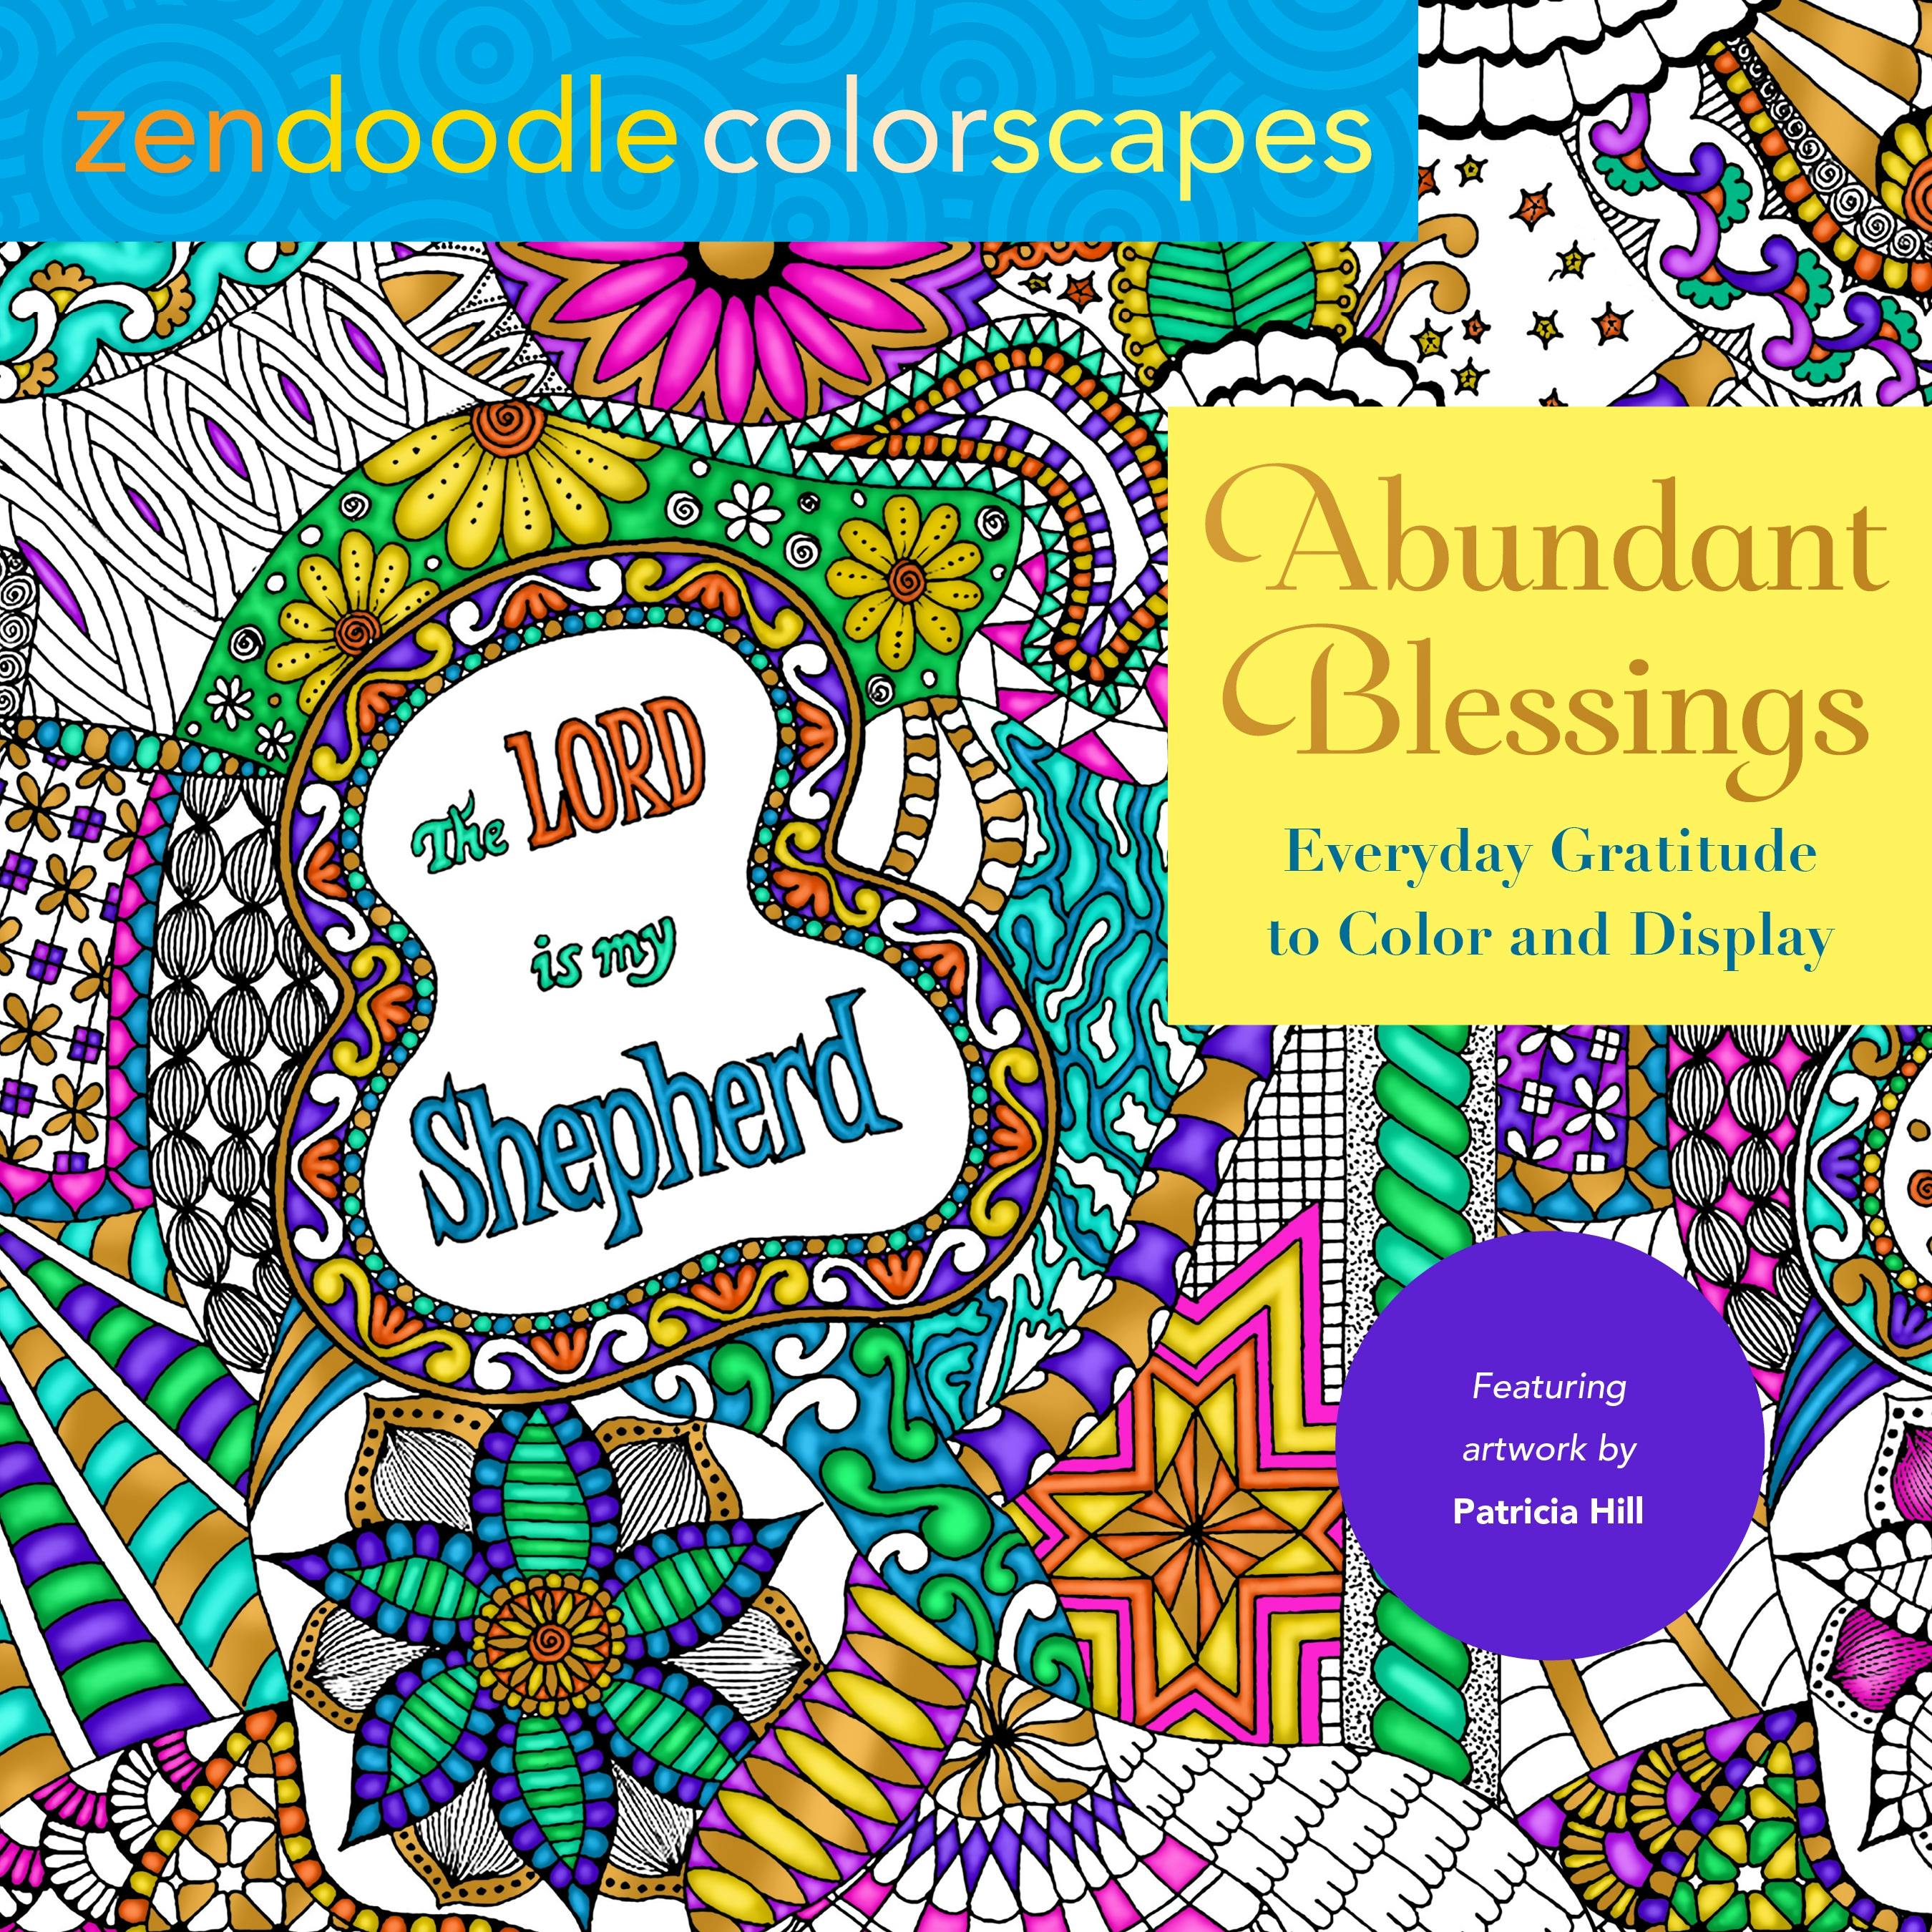 Image of Zendoodle Colorscapes: Abundant Blessings